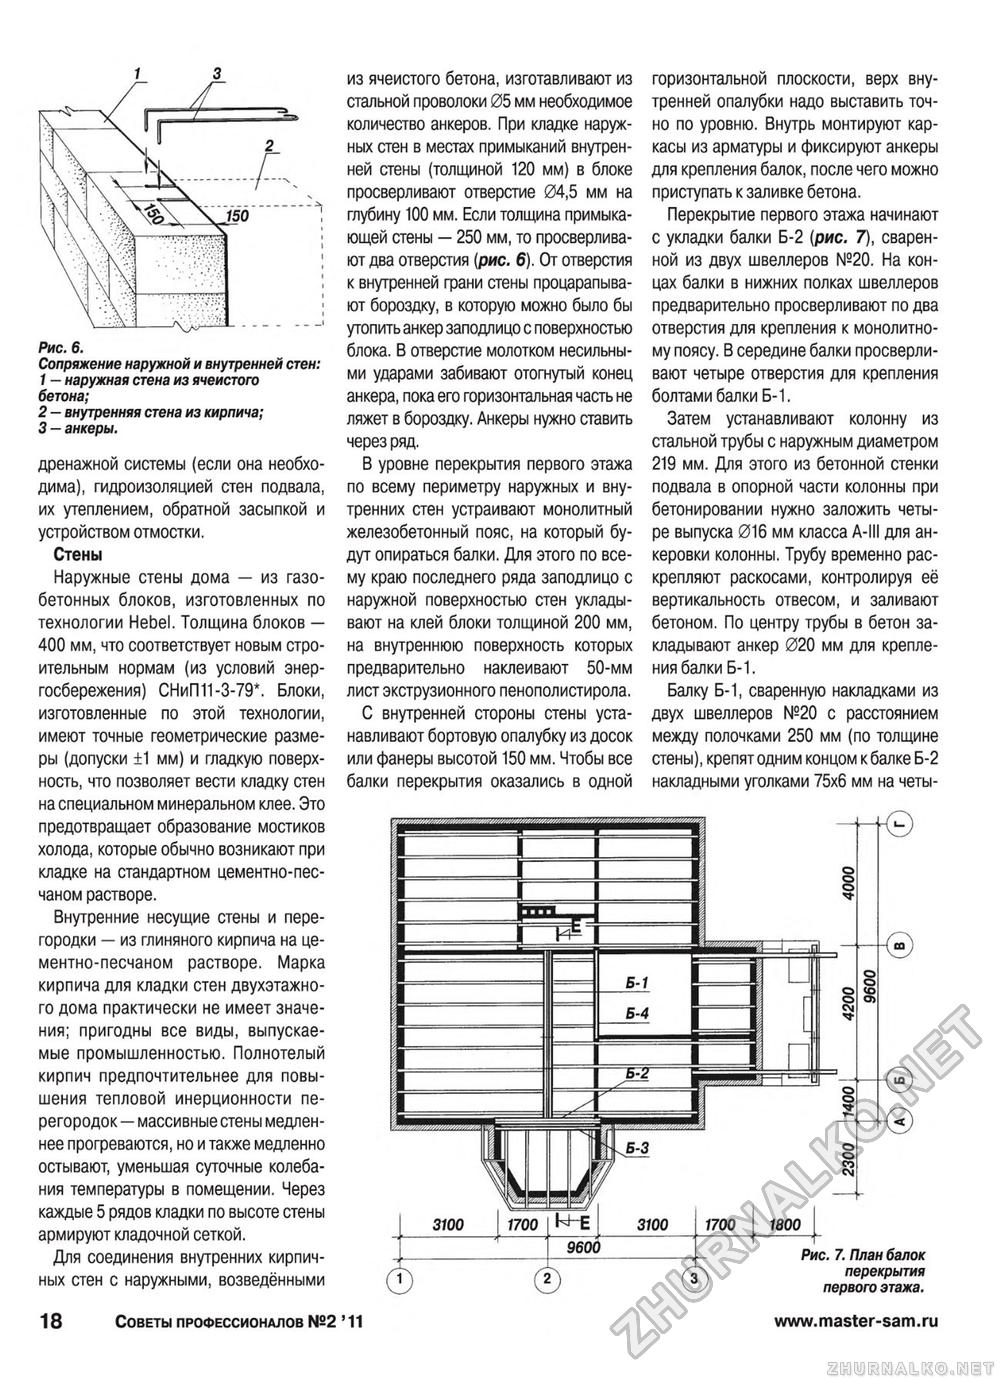 Советы профессионалов 2011-02, страница 18